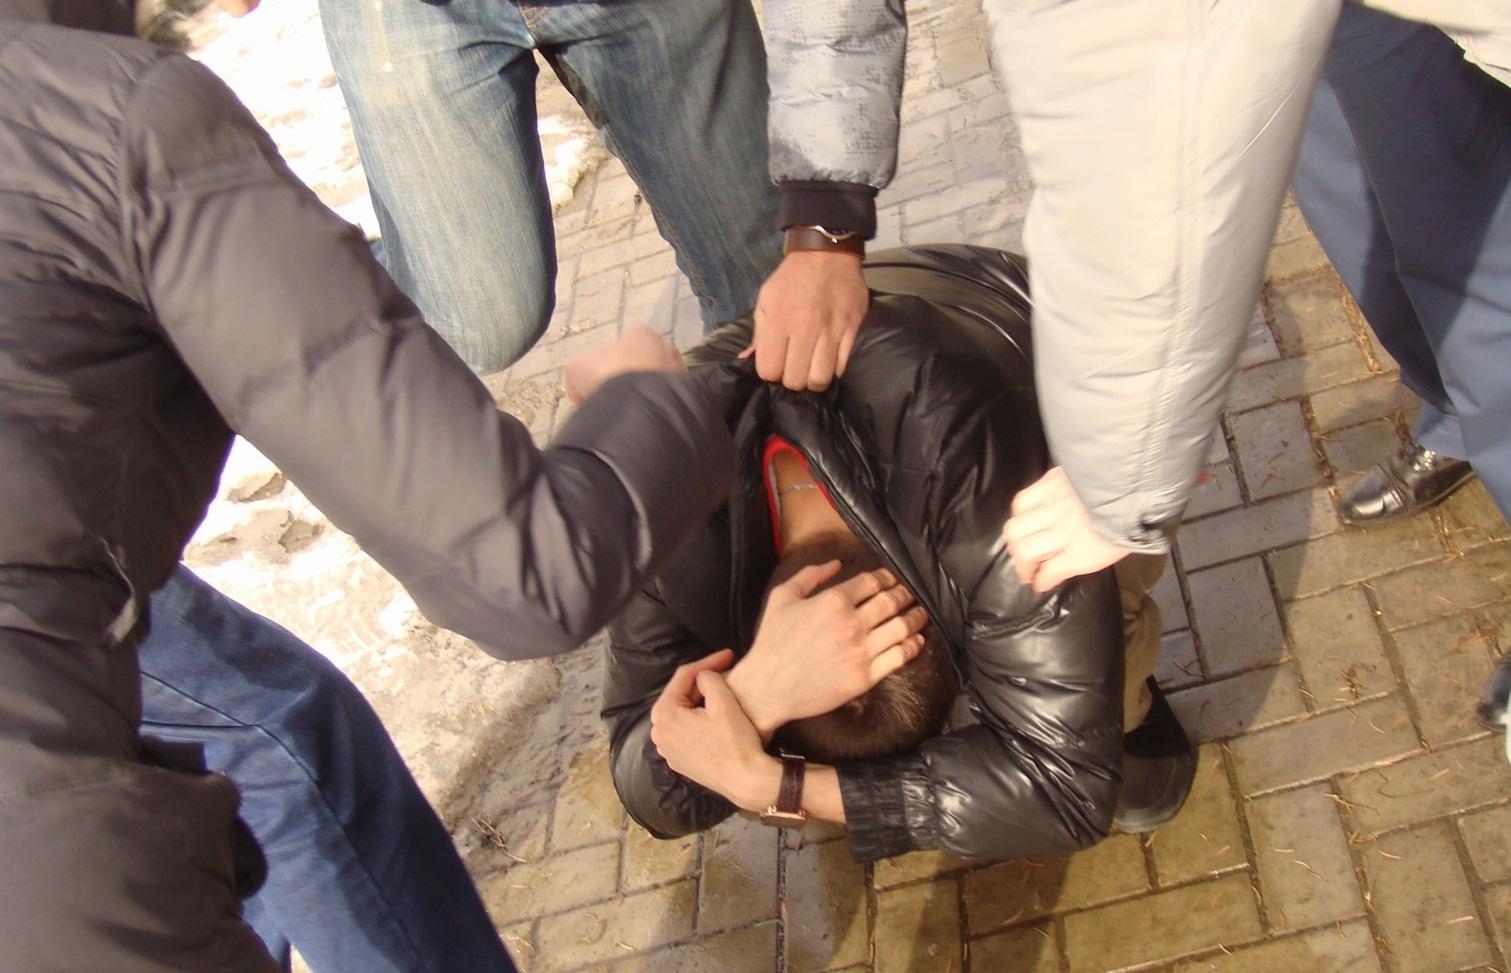 Наказали толпой пьяную: порно видео на укатлант.рф